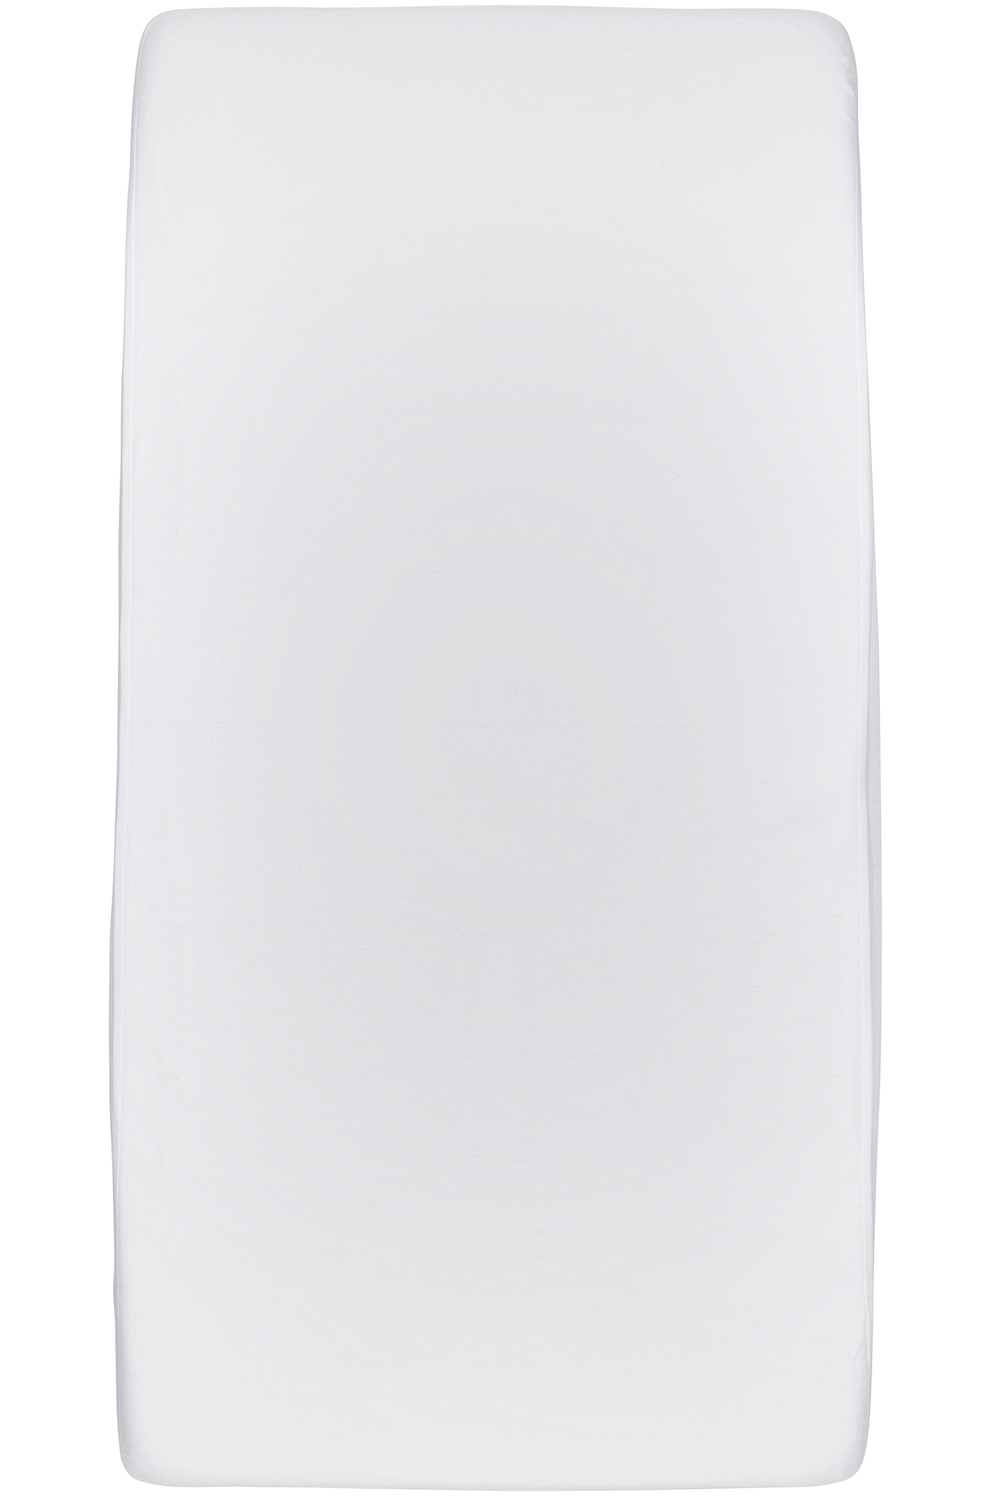 Waterdicht hoeslaken tweepersoons - white - 140x200cm